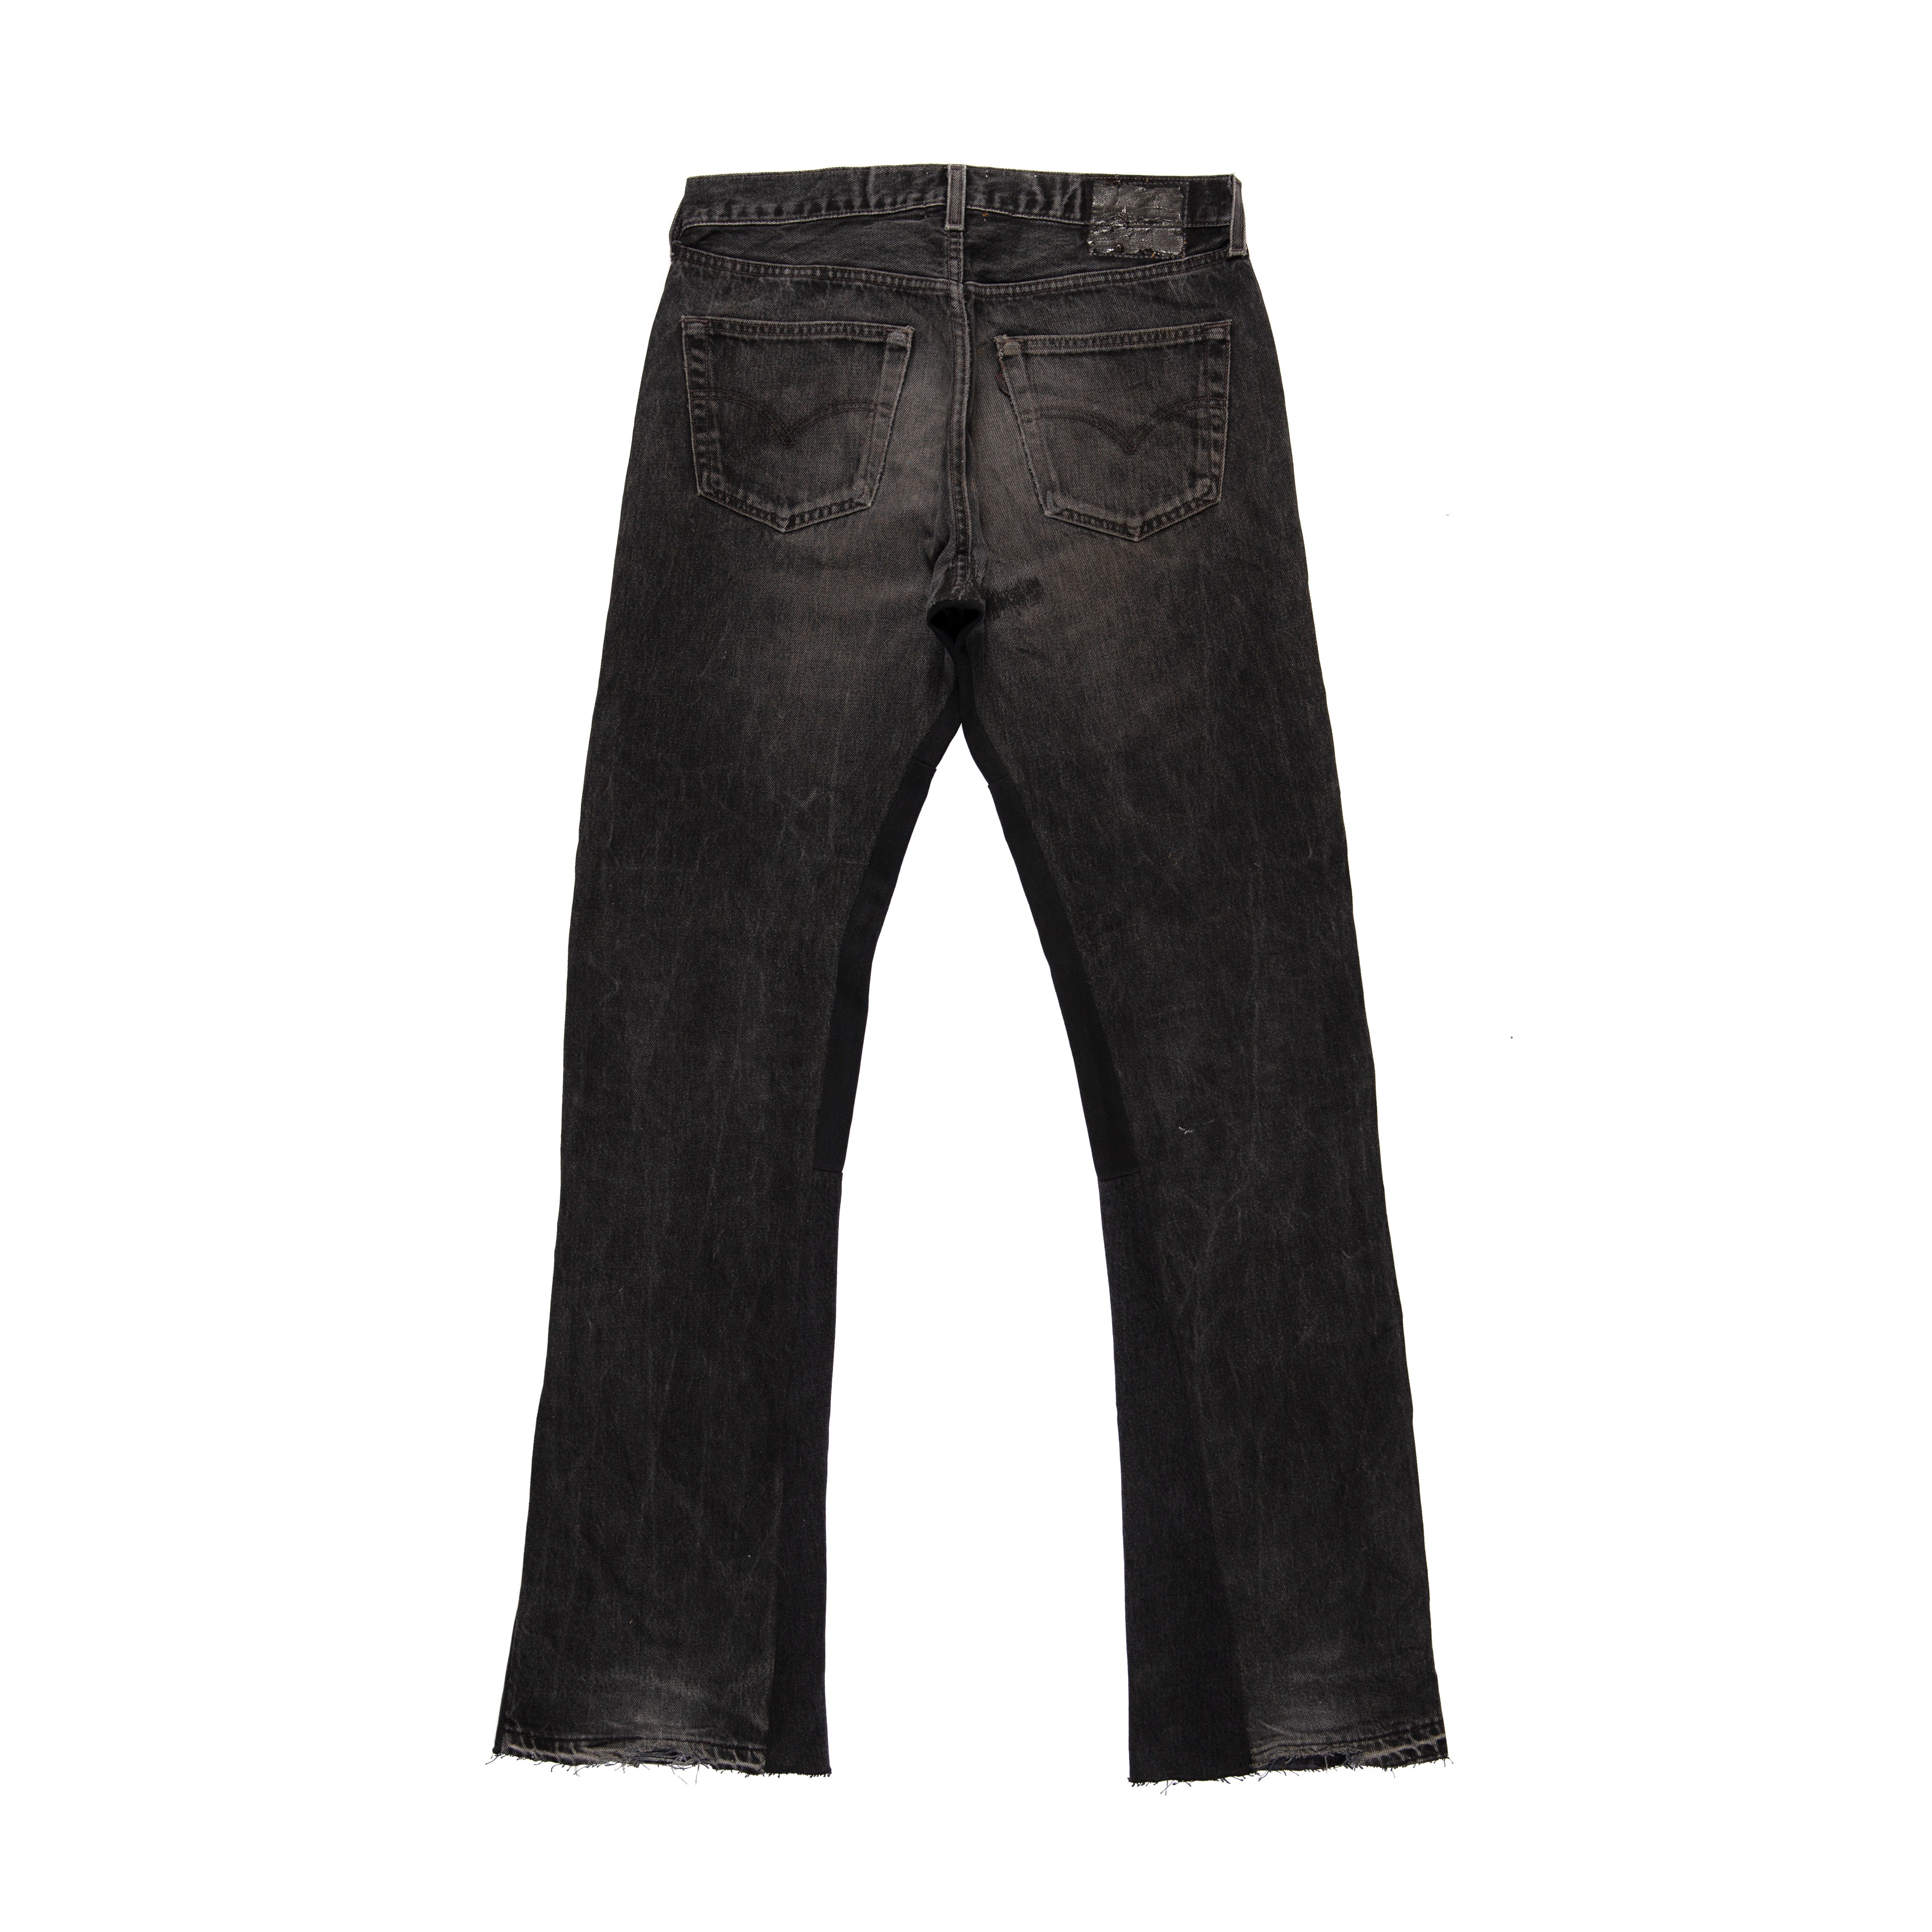 GALLERY DEPT. LA Blvd Flared Jeans - Farfetch